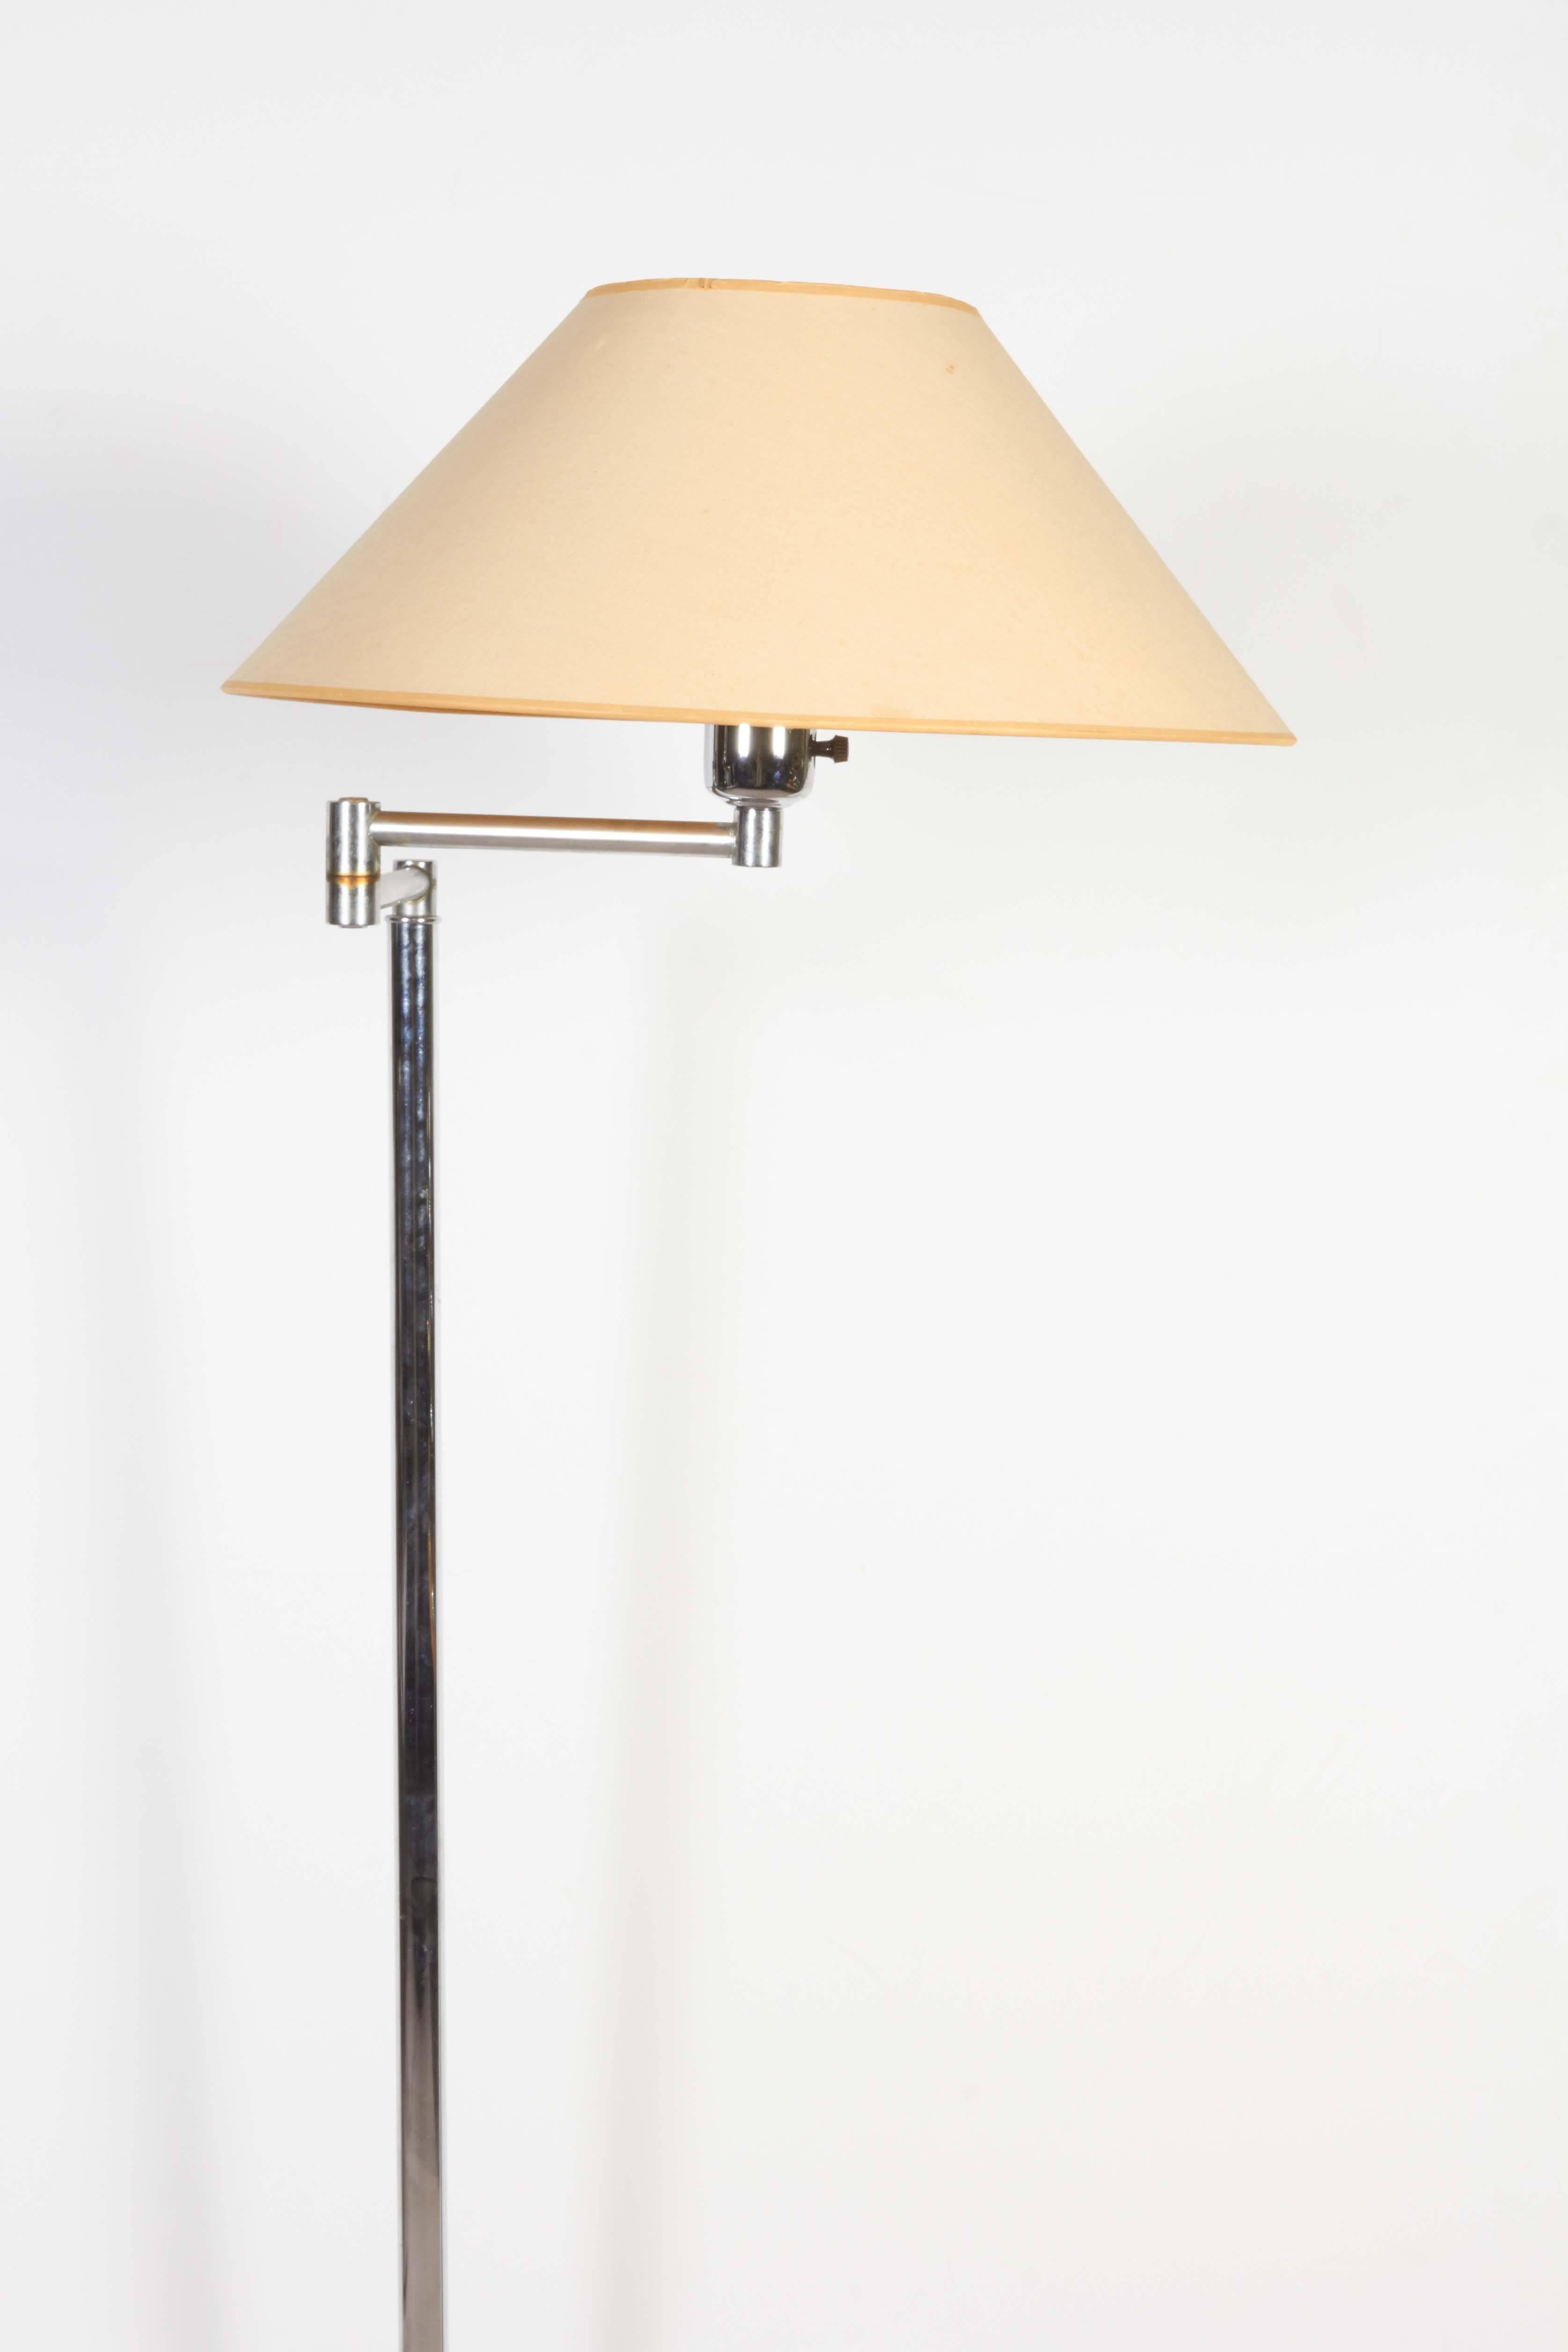 Chrome Walter Von Nessen Swing Arm Floor Lamp